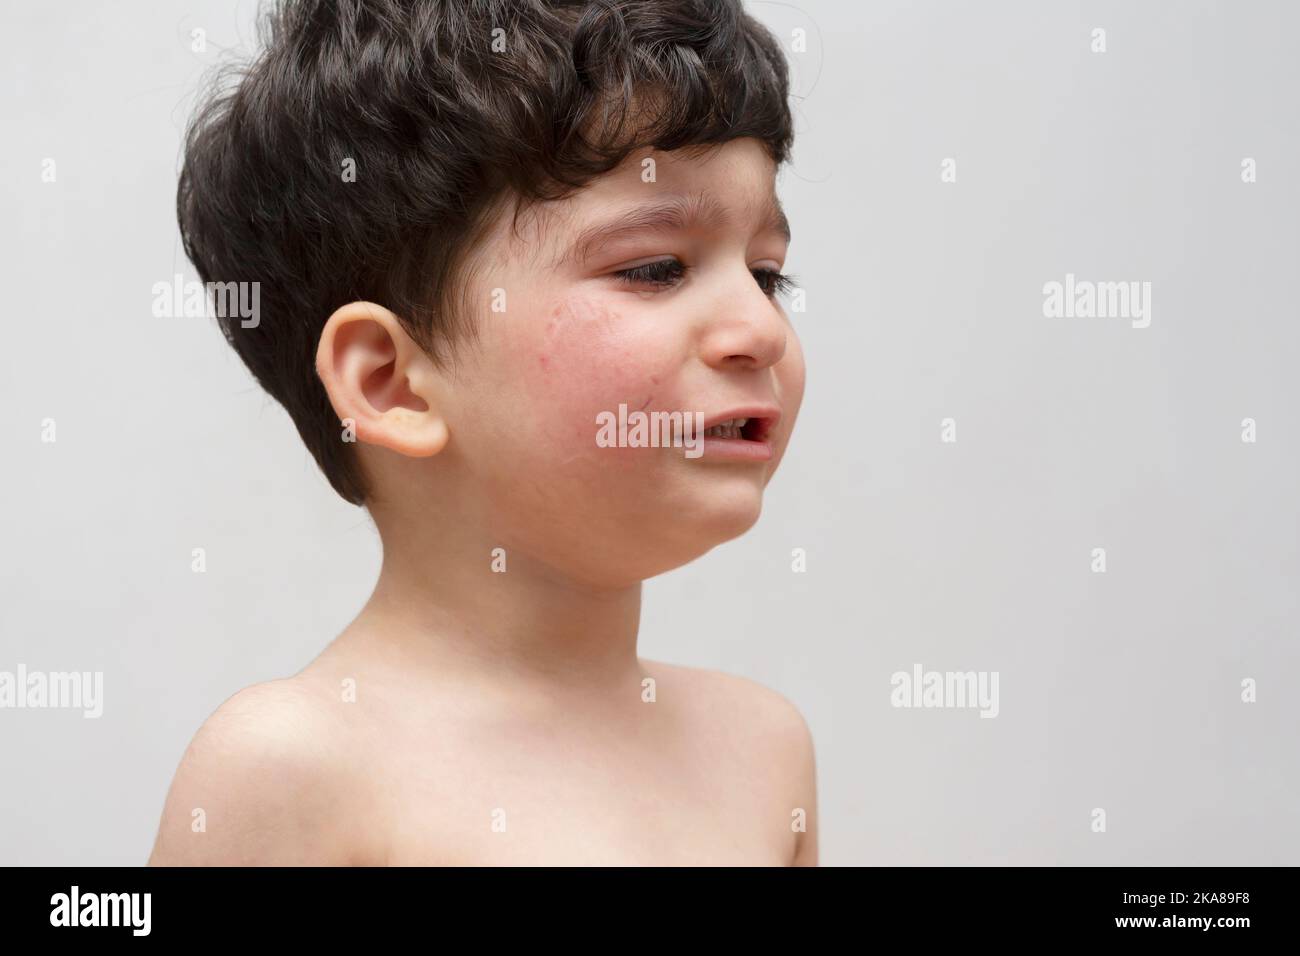 Porträt eines weinenden Jungen, der von einem anderen Kind in die Wange gebissen wurde Stockfoto